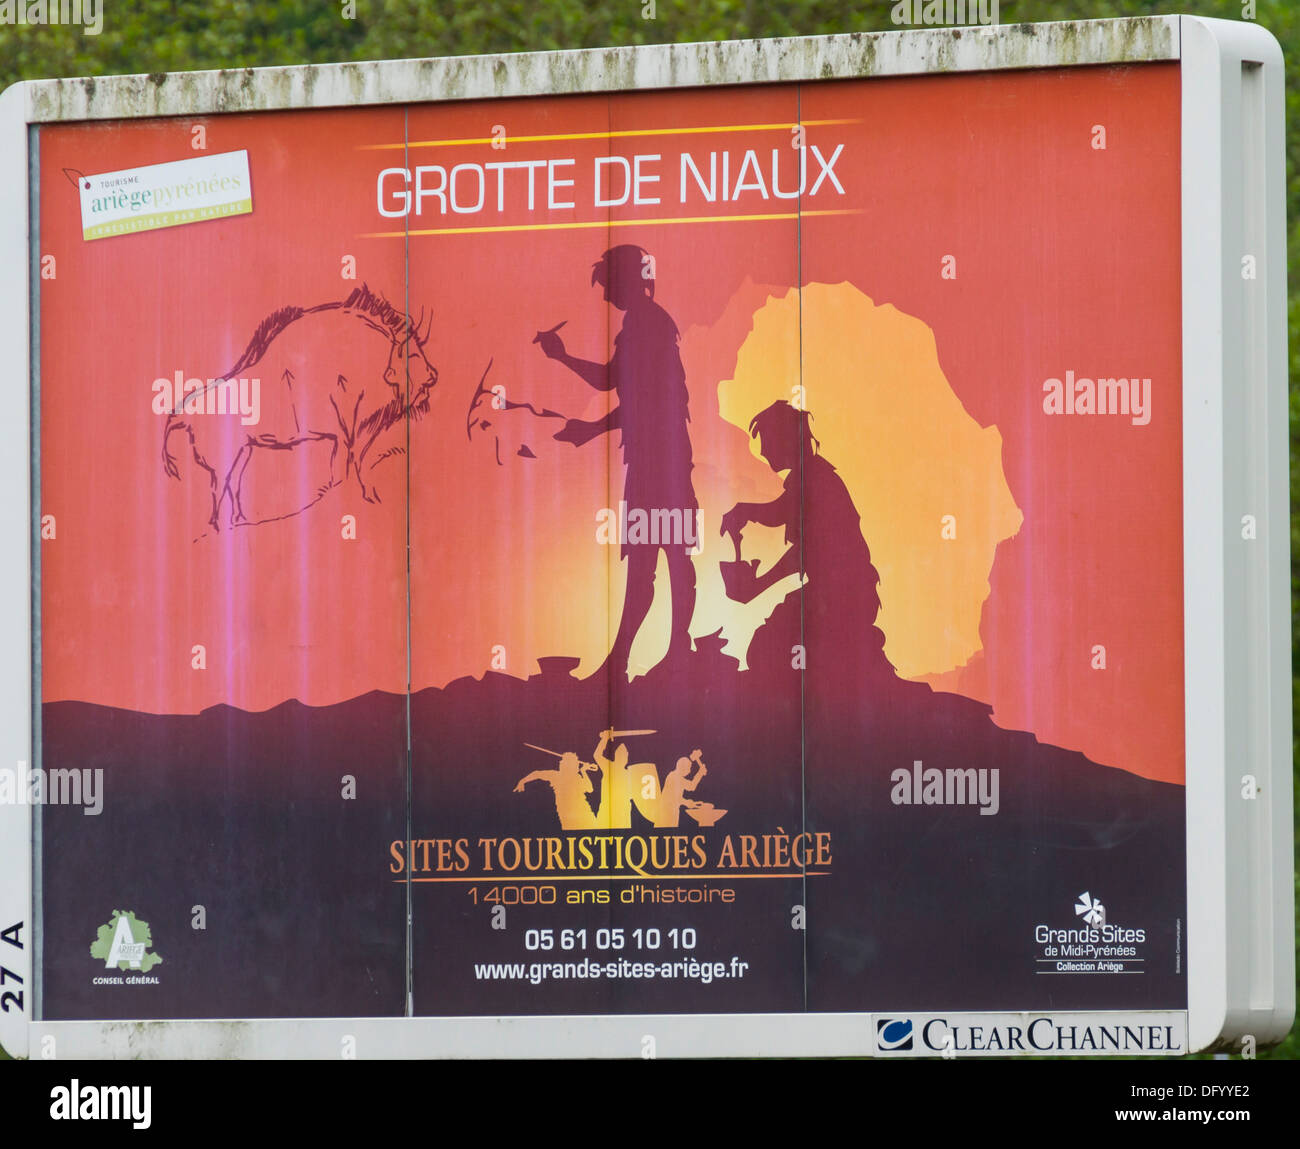 France, Ariege - Grotte de Niaux poster. Stock Photo